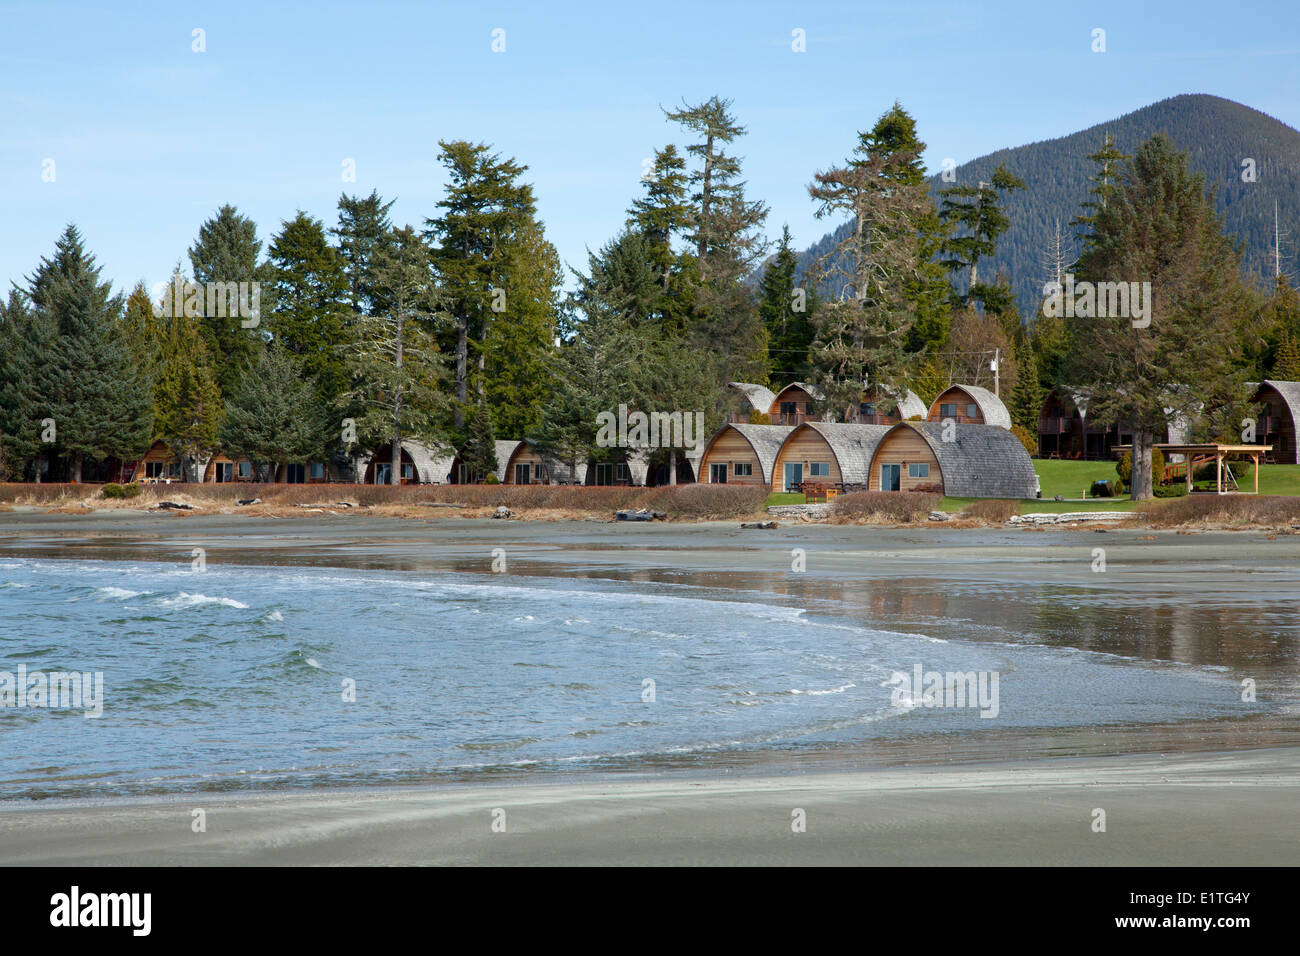 Hütten Vermietung von Unterkünften am MacKenzie Beach in der Nähe von Tofino auf Vancouver Island im Clayoquot Sound in British Columbia Kanada Stockfoto